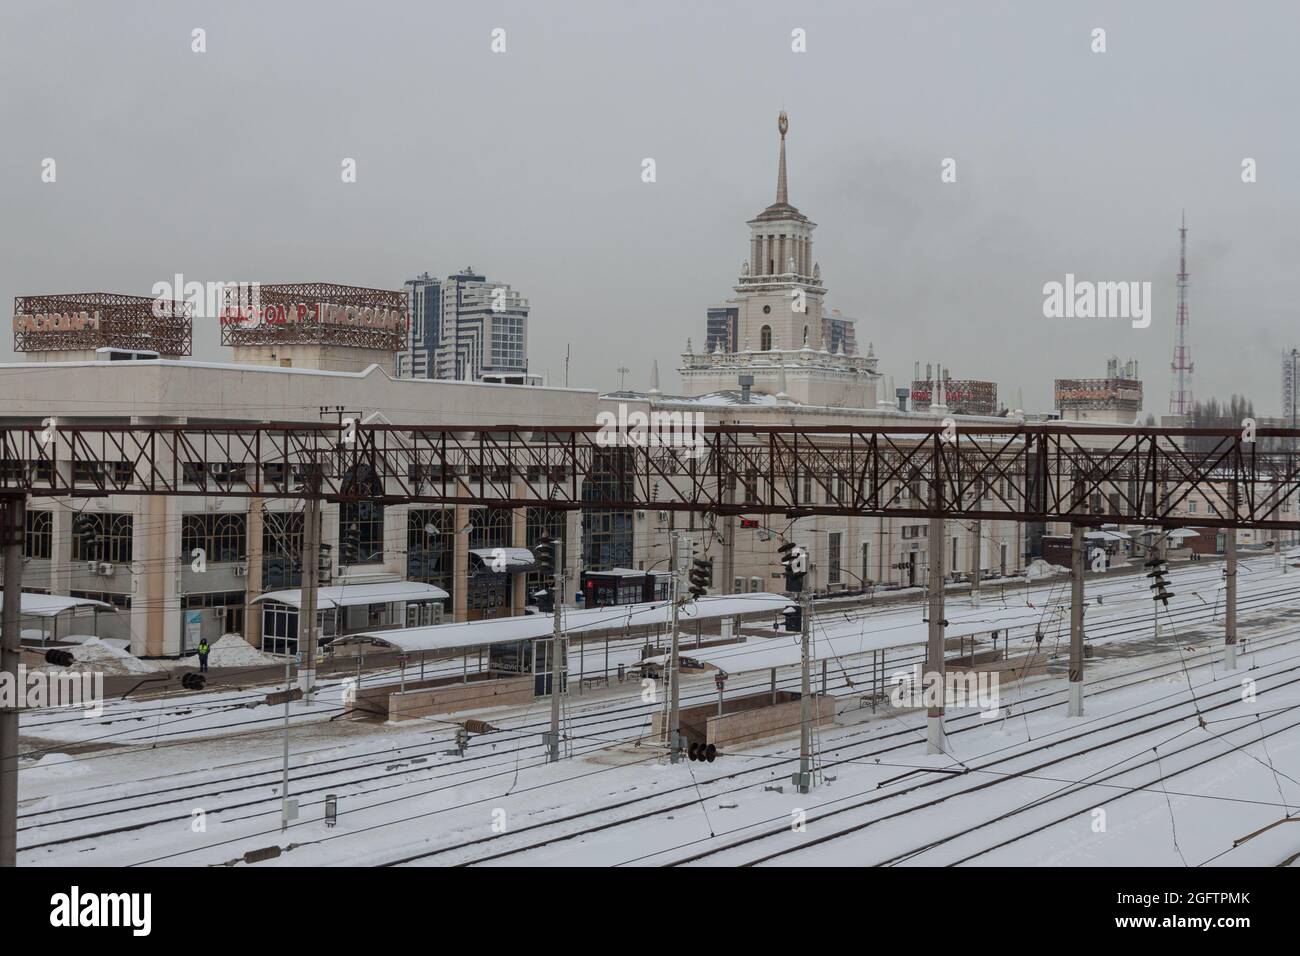 Stazione ferroviaria Krasnodar-1 in inverno. Non ci sono treni sui binari. Il concetto di trasporto ferroviario. Krasnodar, Russia, 18 febbraio 2021 Foto Stock